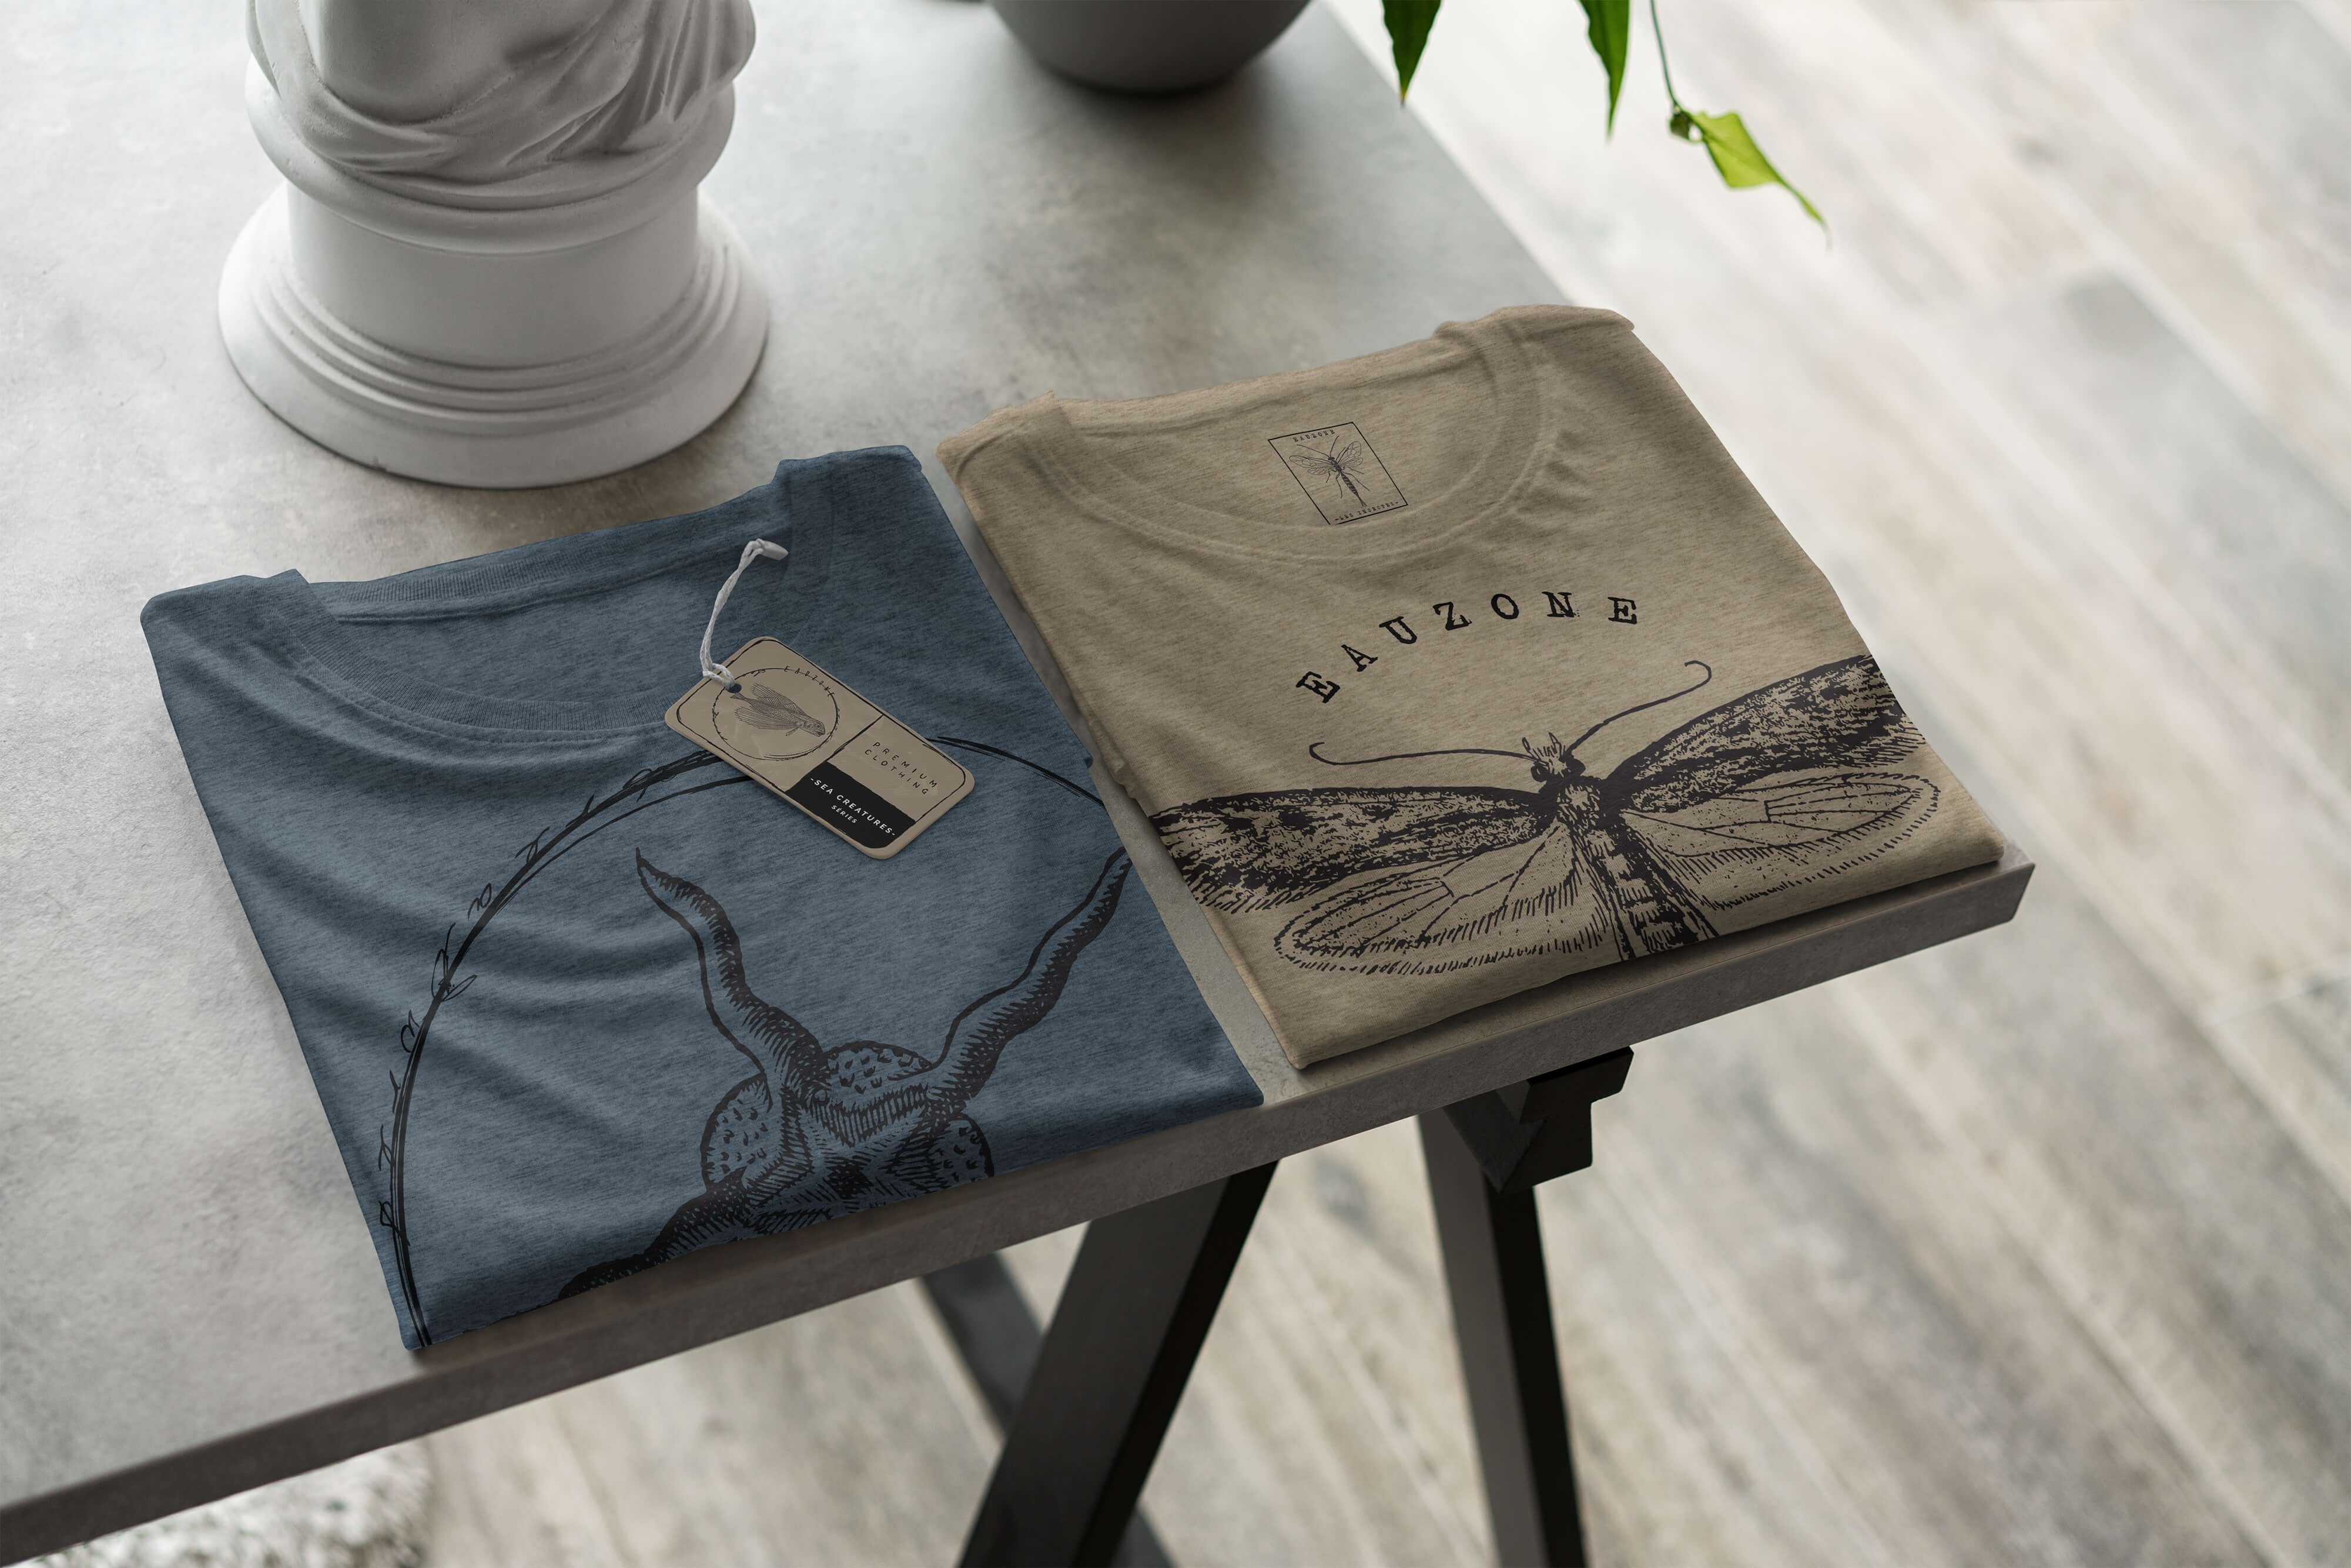 Sea sportlicher 019 - T-Shirt und Schnitt Sea T-Shirt / Fische Art Serie: Tiefsee Struktur feine Indigo Creatures, Sinus